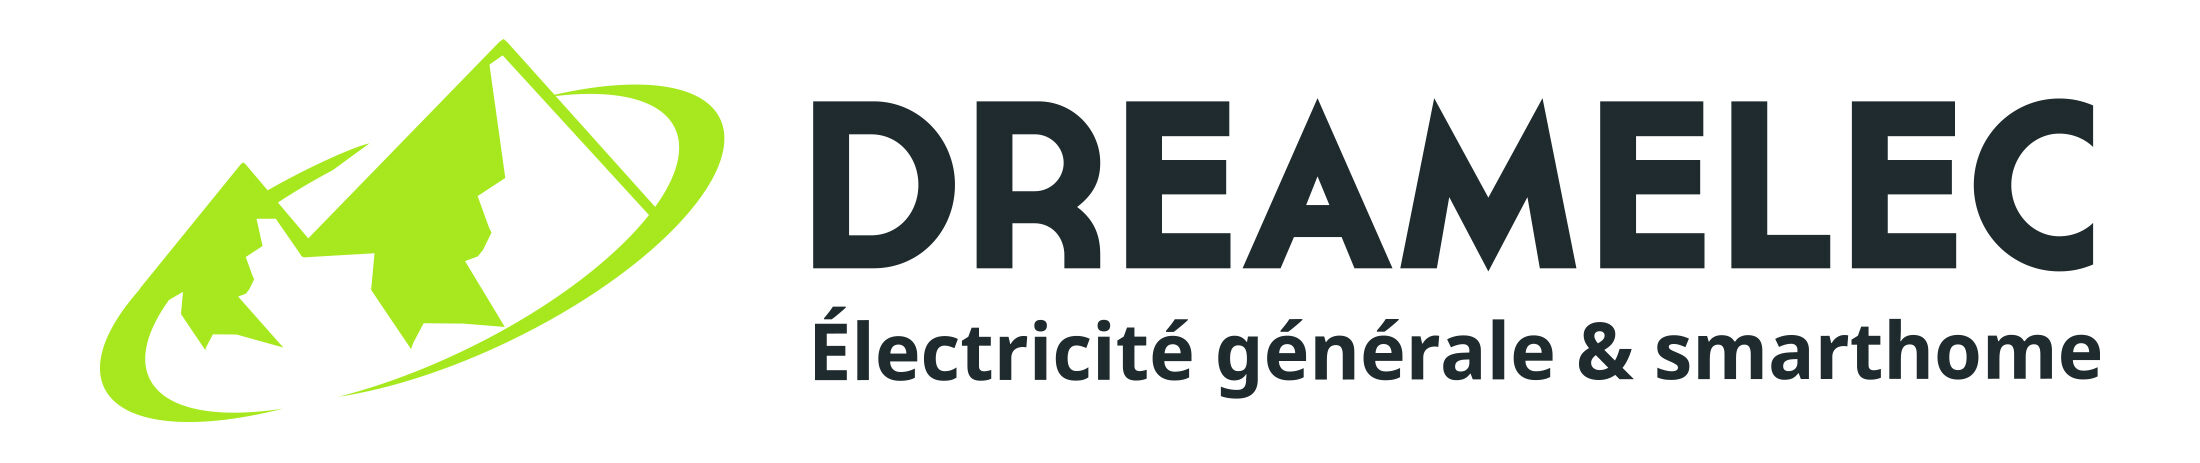 DREAMELEC - Electricien certifié - Particuliers ou entreprises.